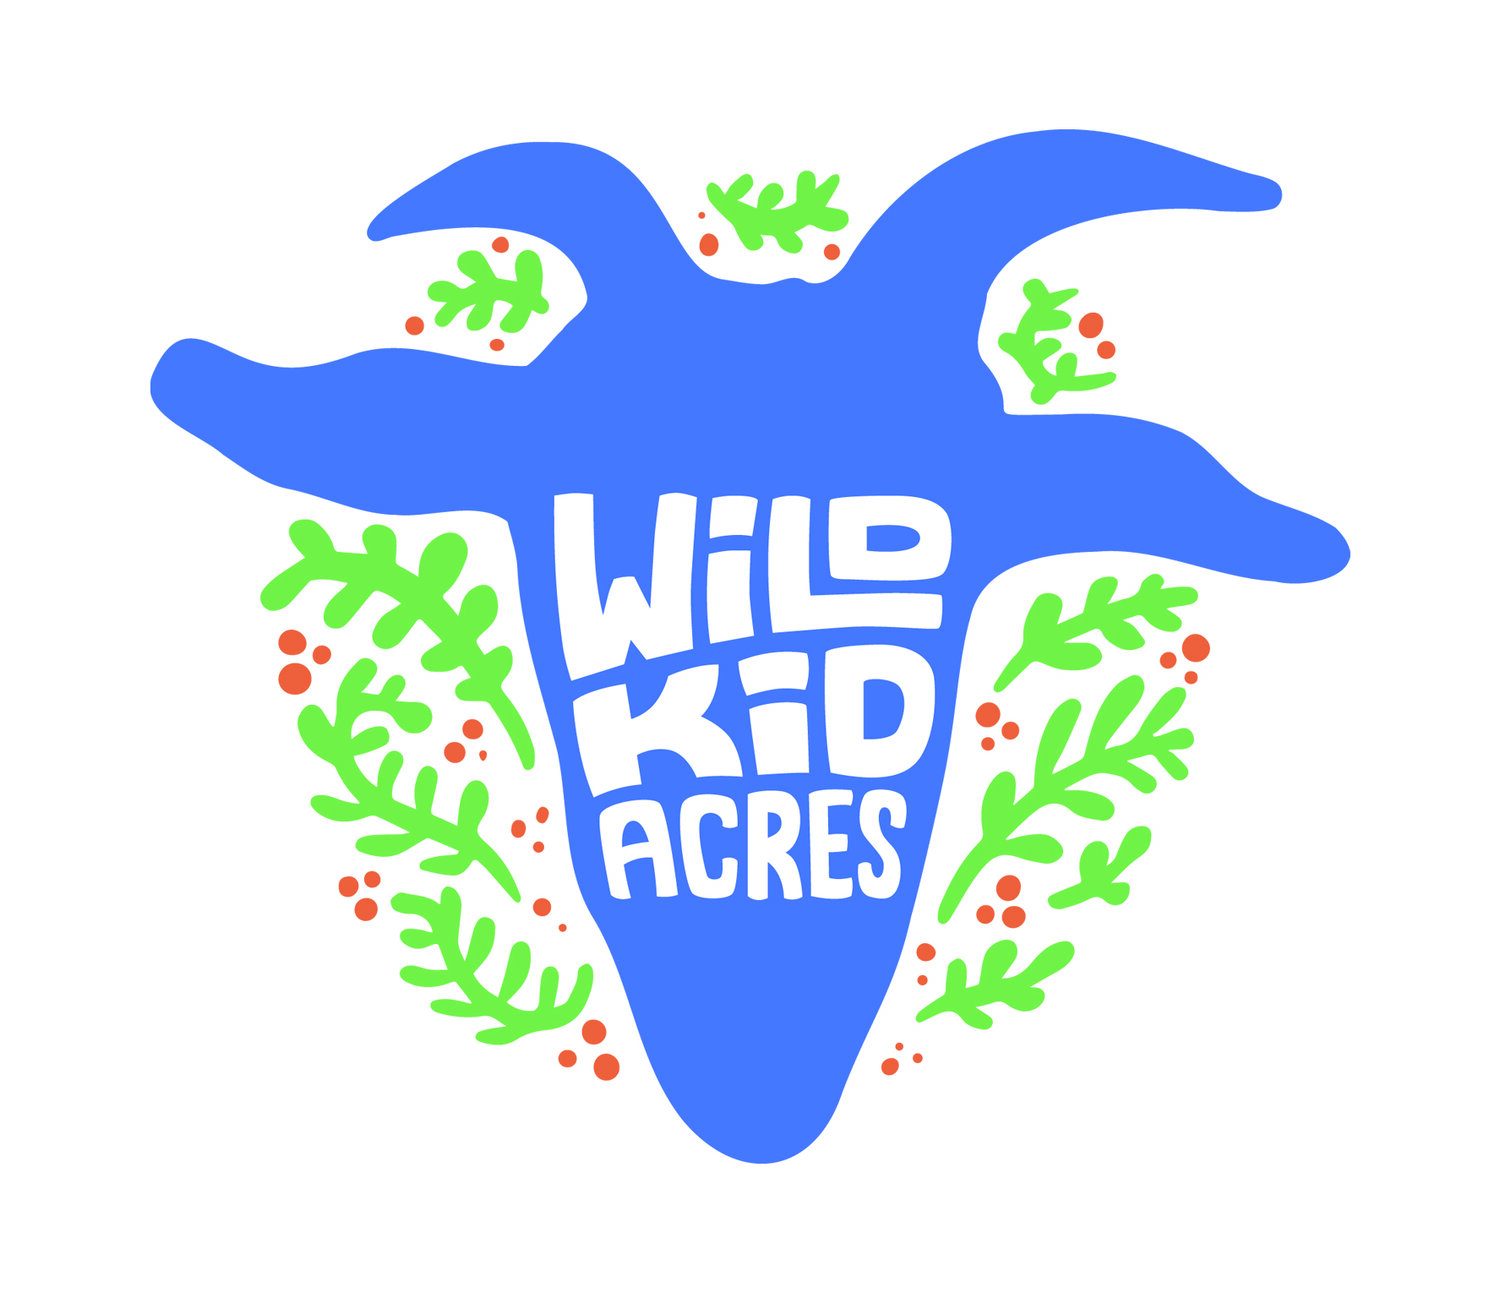 Wild Kid Acres